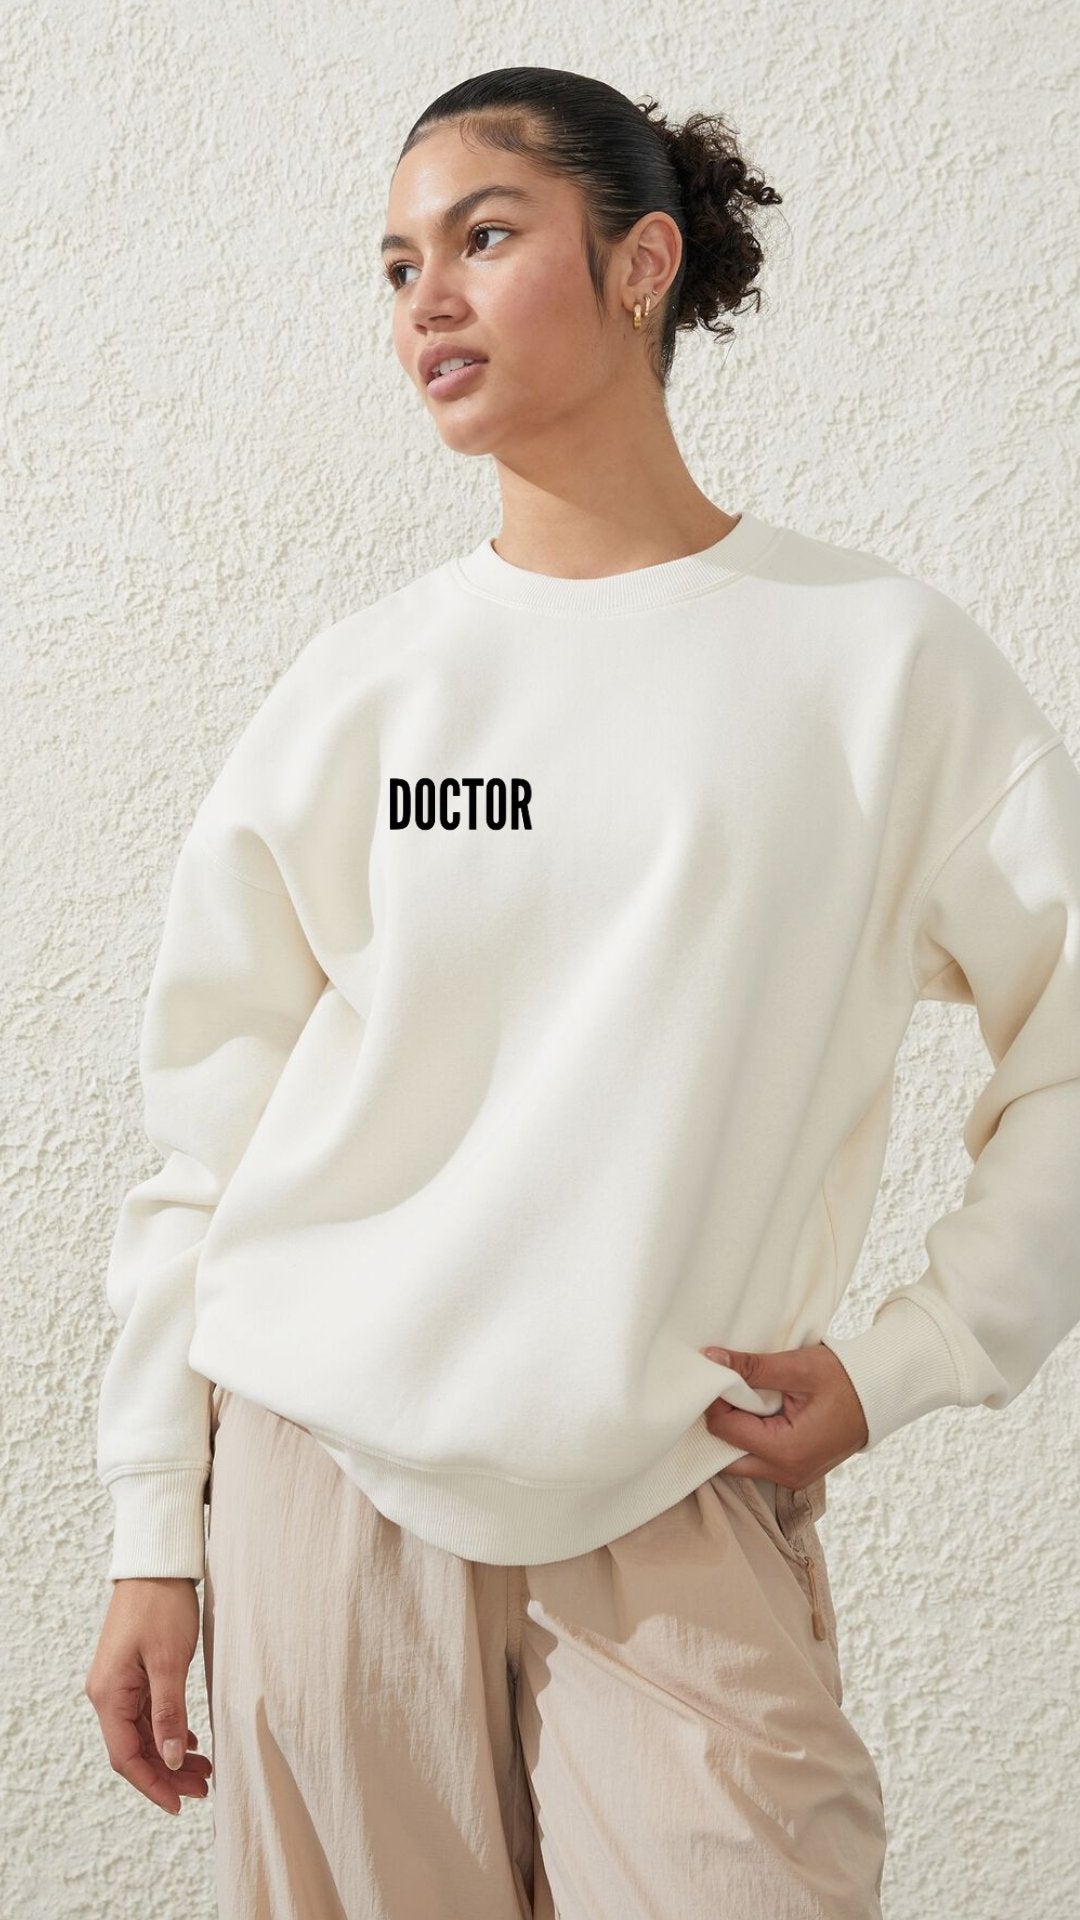 Hi, my name is "DOCTOR______" Luxury Unisex Sweatshirt - The Woman Doctor